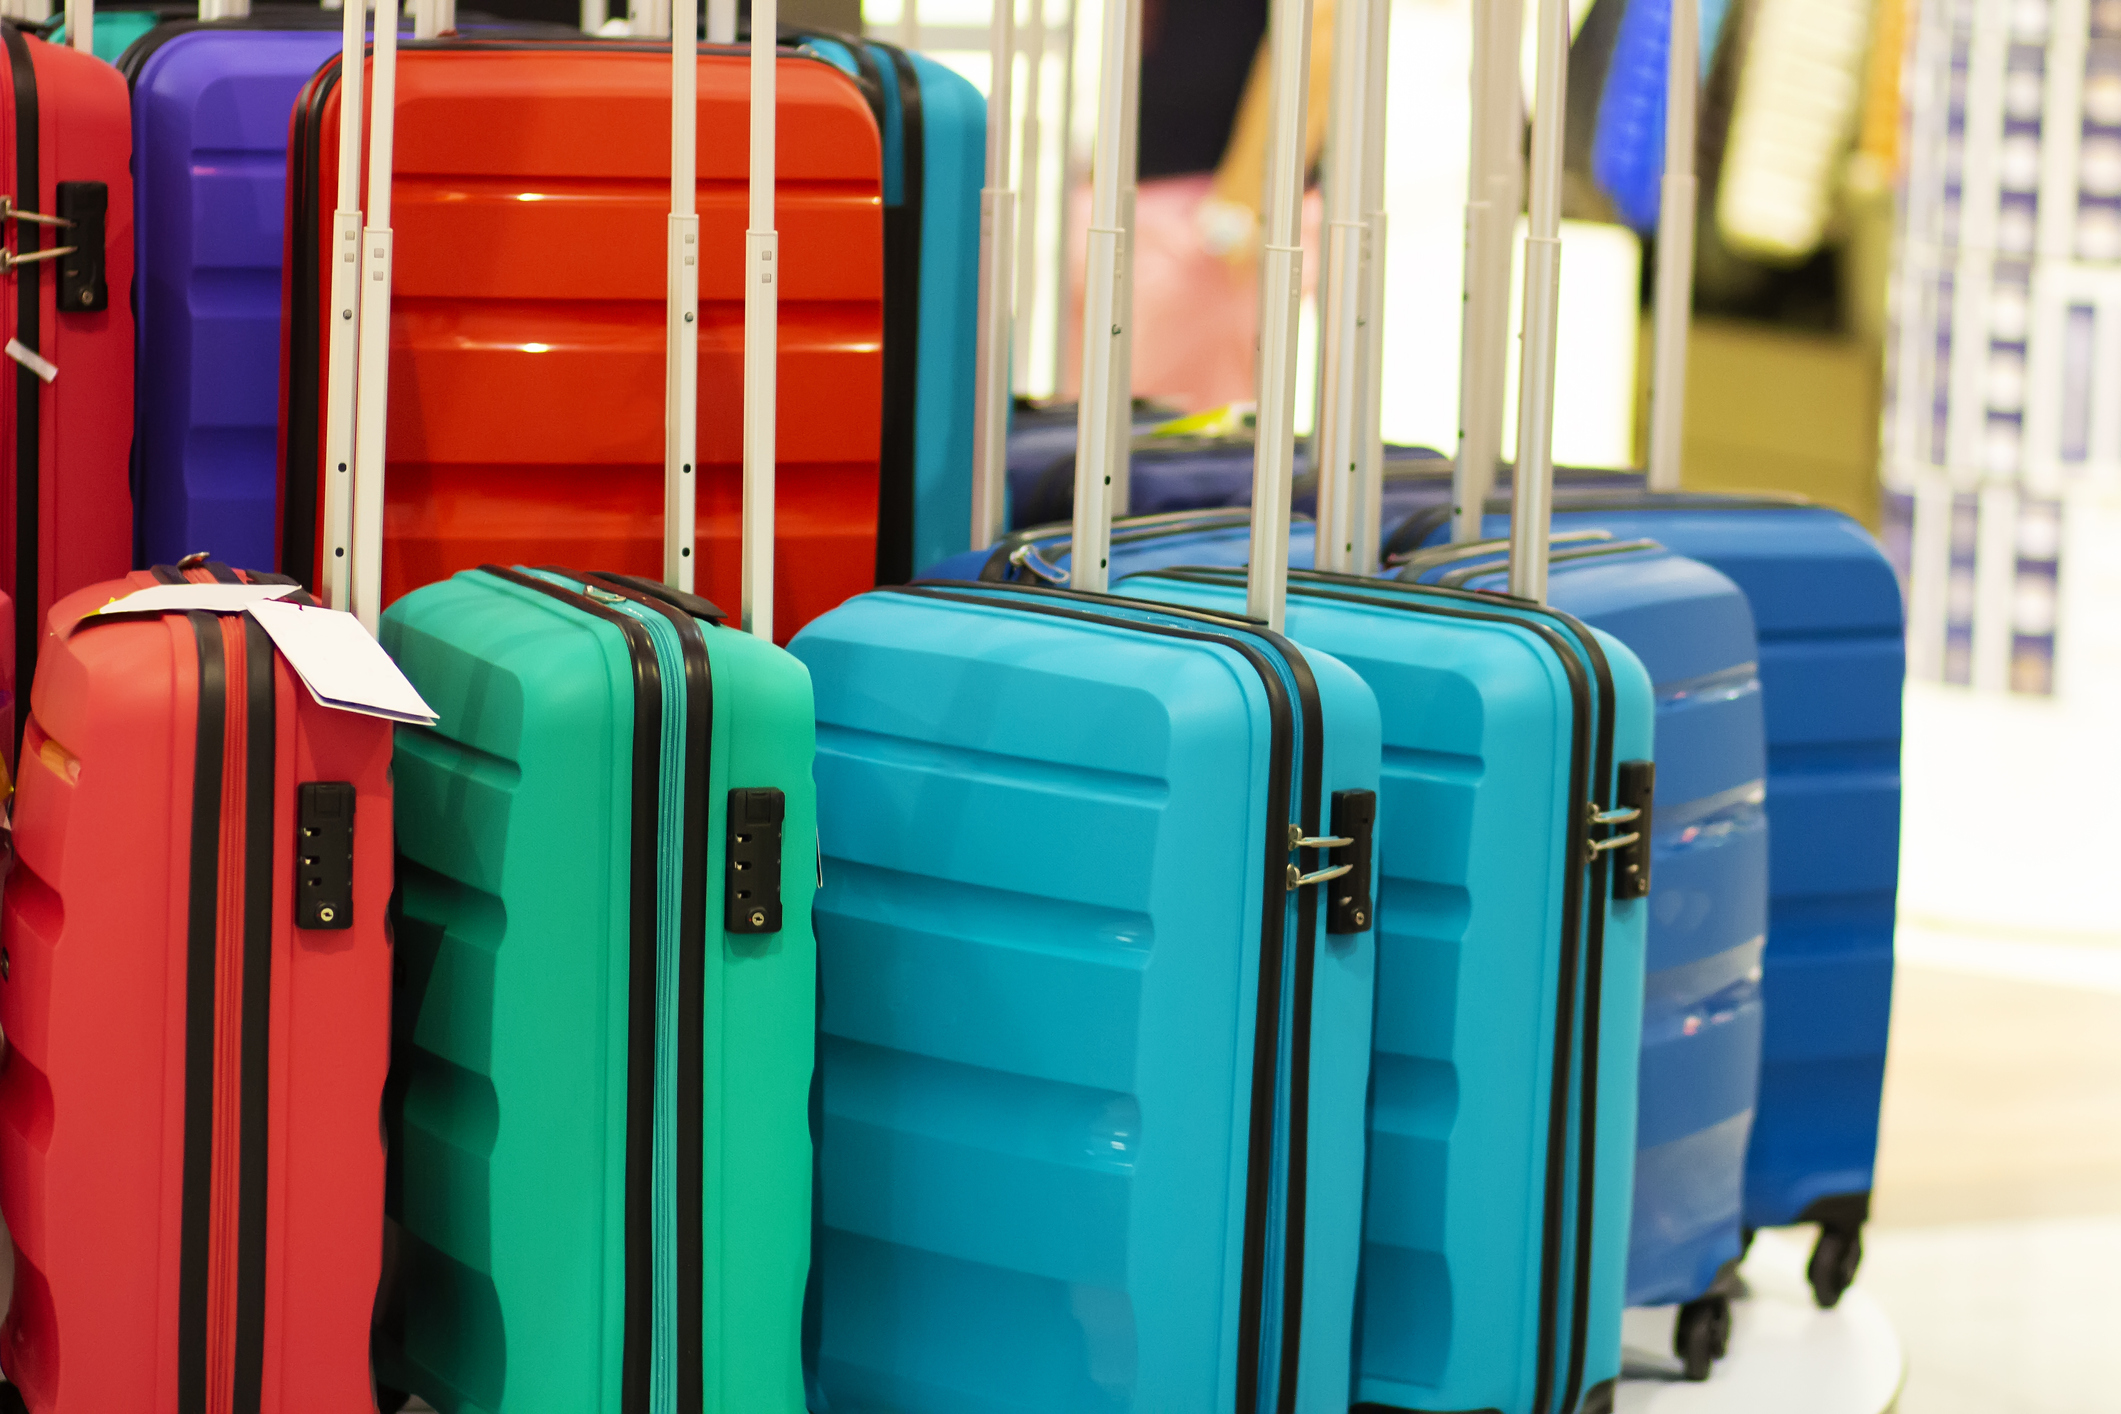 スーツケース 小型 Sサイズ キャリーケース 旅行かばん 軽量-カラーA6